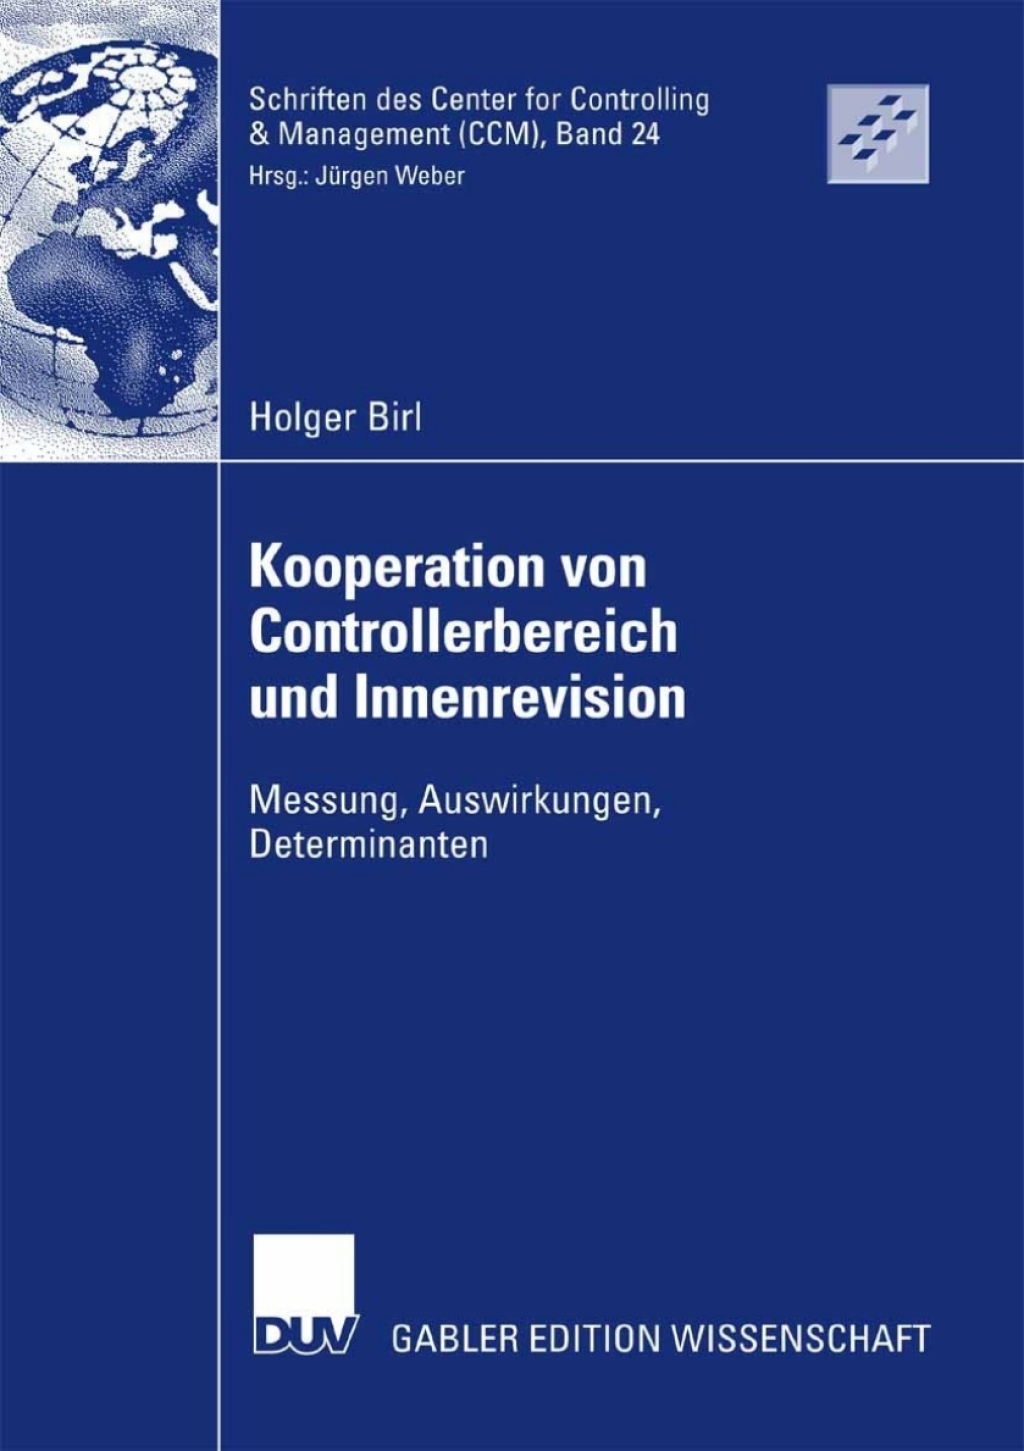 ISBN 9783835007246 product image for Kooperation von Controllerbereich und Innenrevision (eBook Rental) | upcitemdb.com